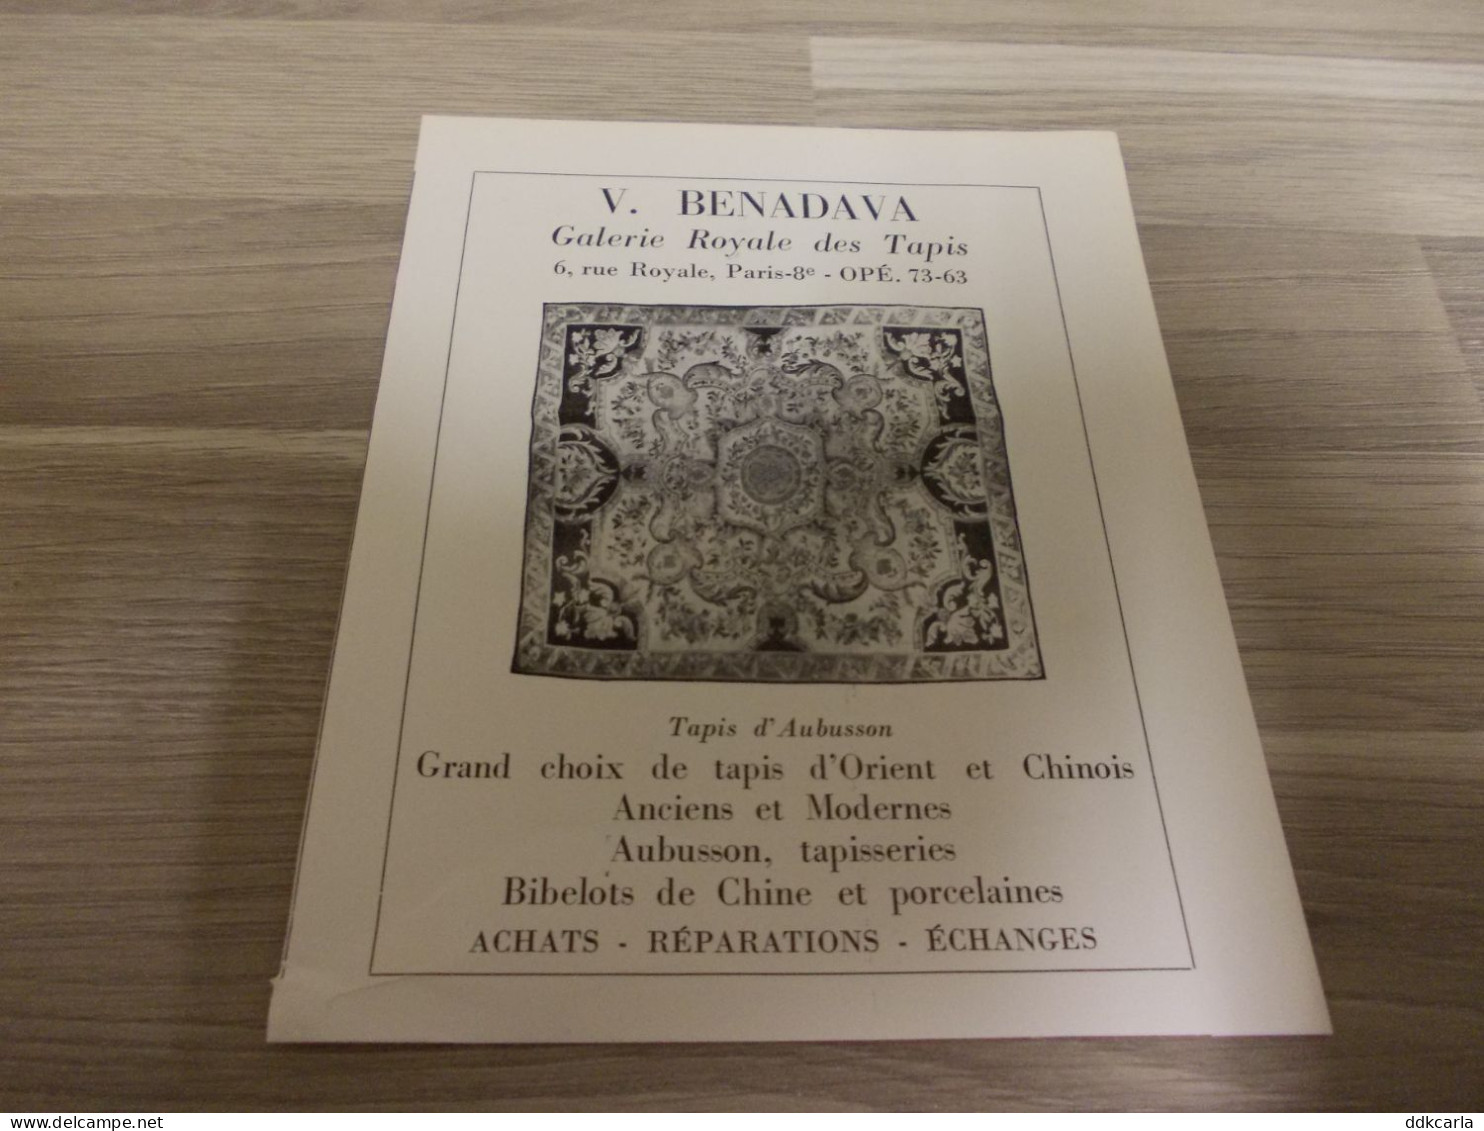 Reclame Advertentie Uit Oud Tijdschrift 1956 - V. BENADAVA Galerie Royale Des Tapis - Tapis D'Aubusson - Werbung